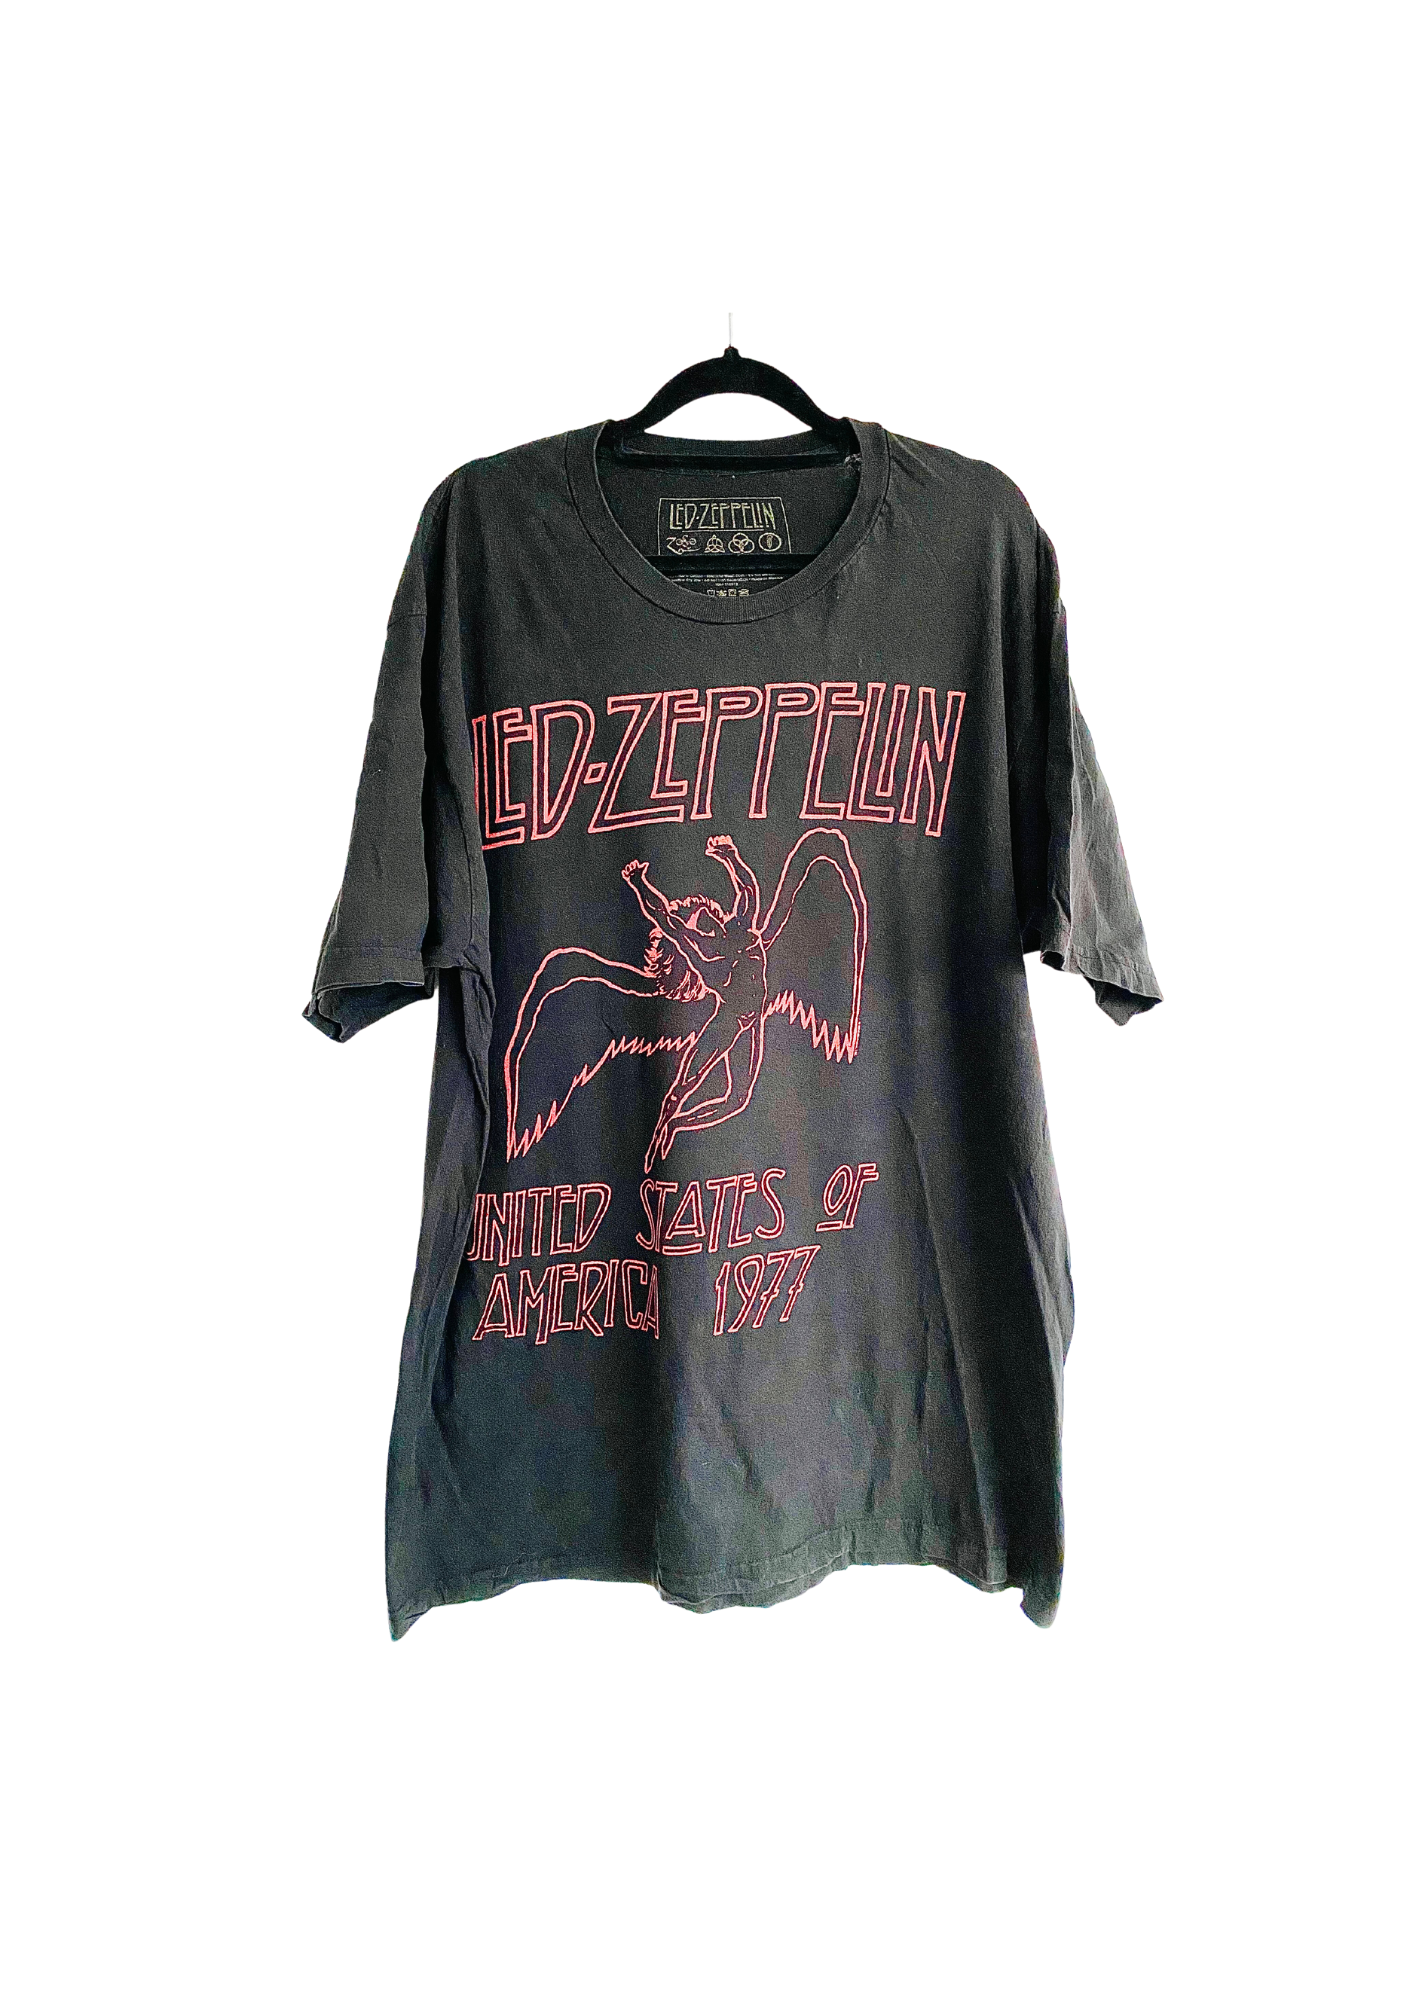 Vintage Led-Zeppelin T-Shirt